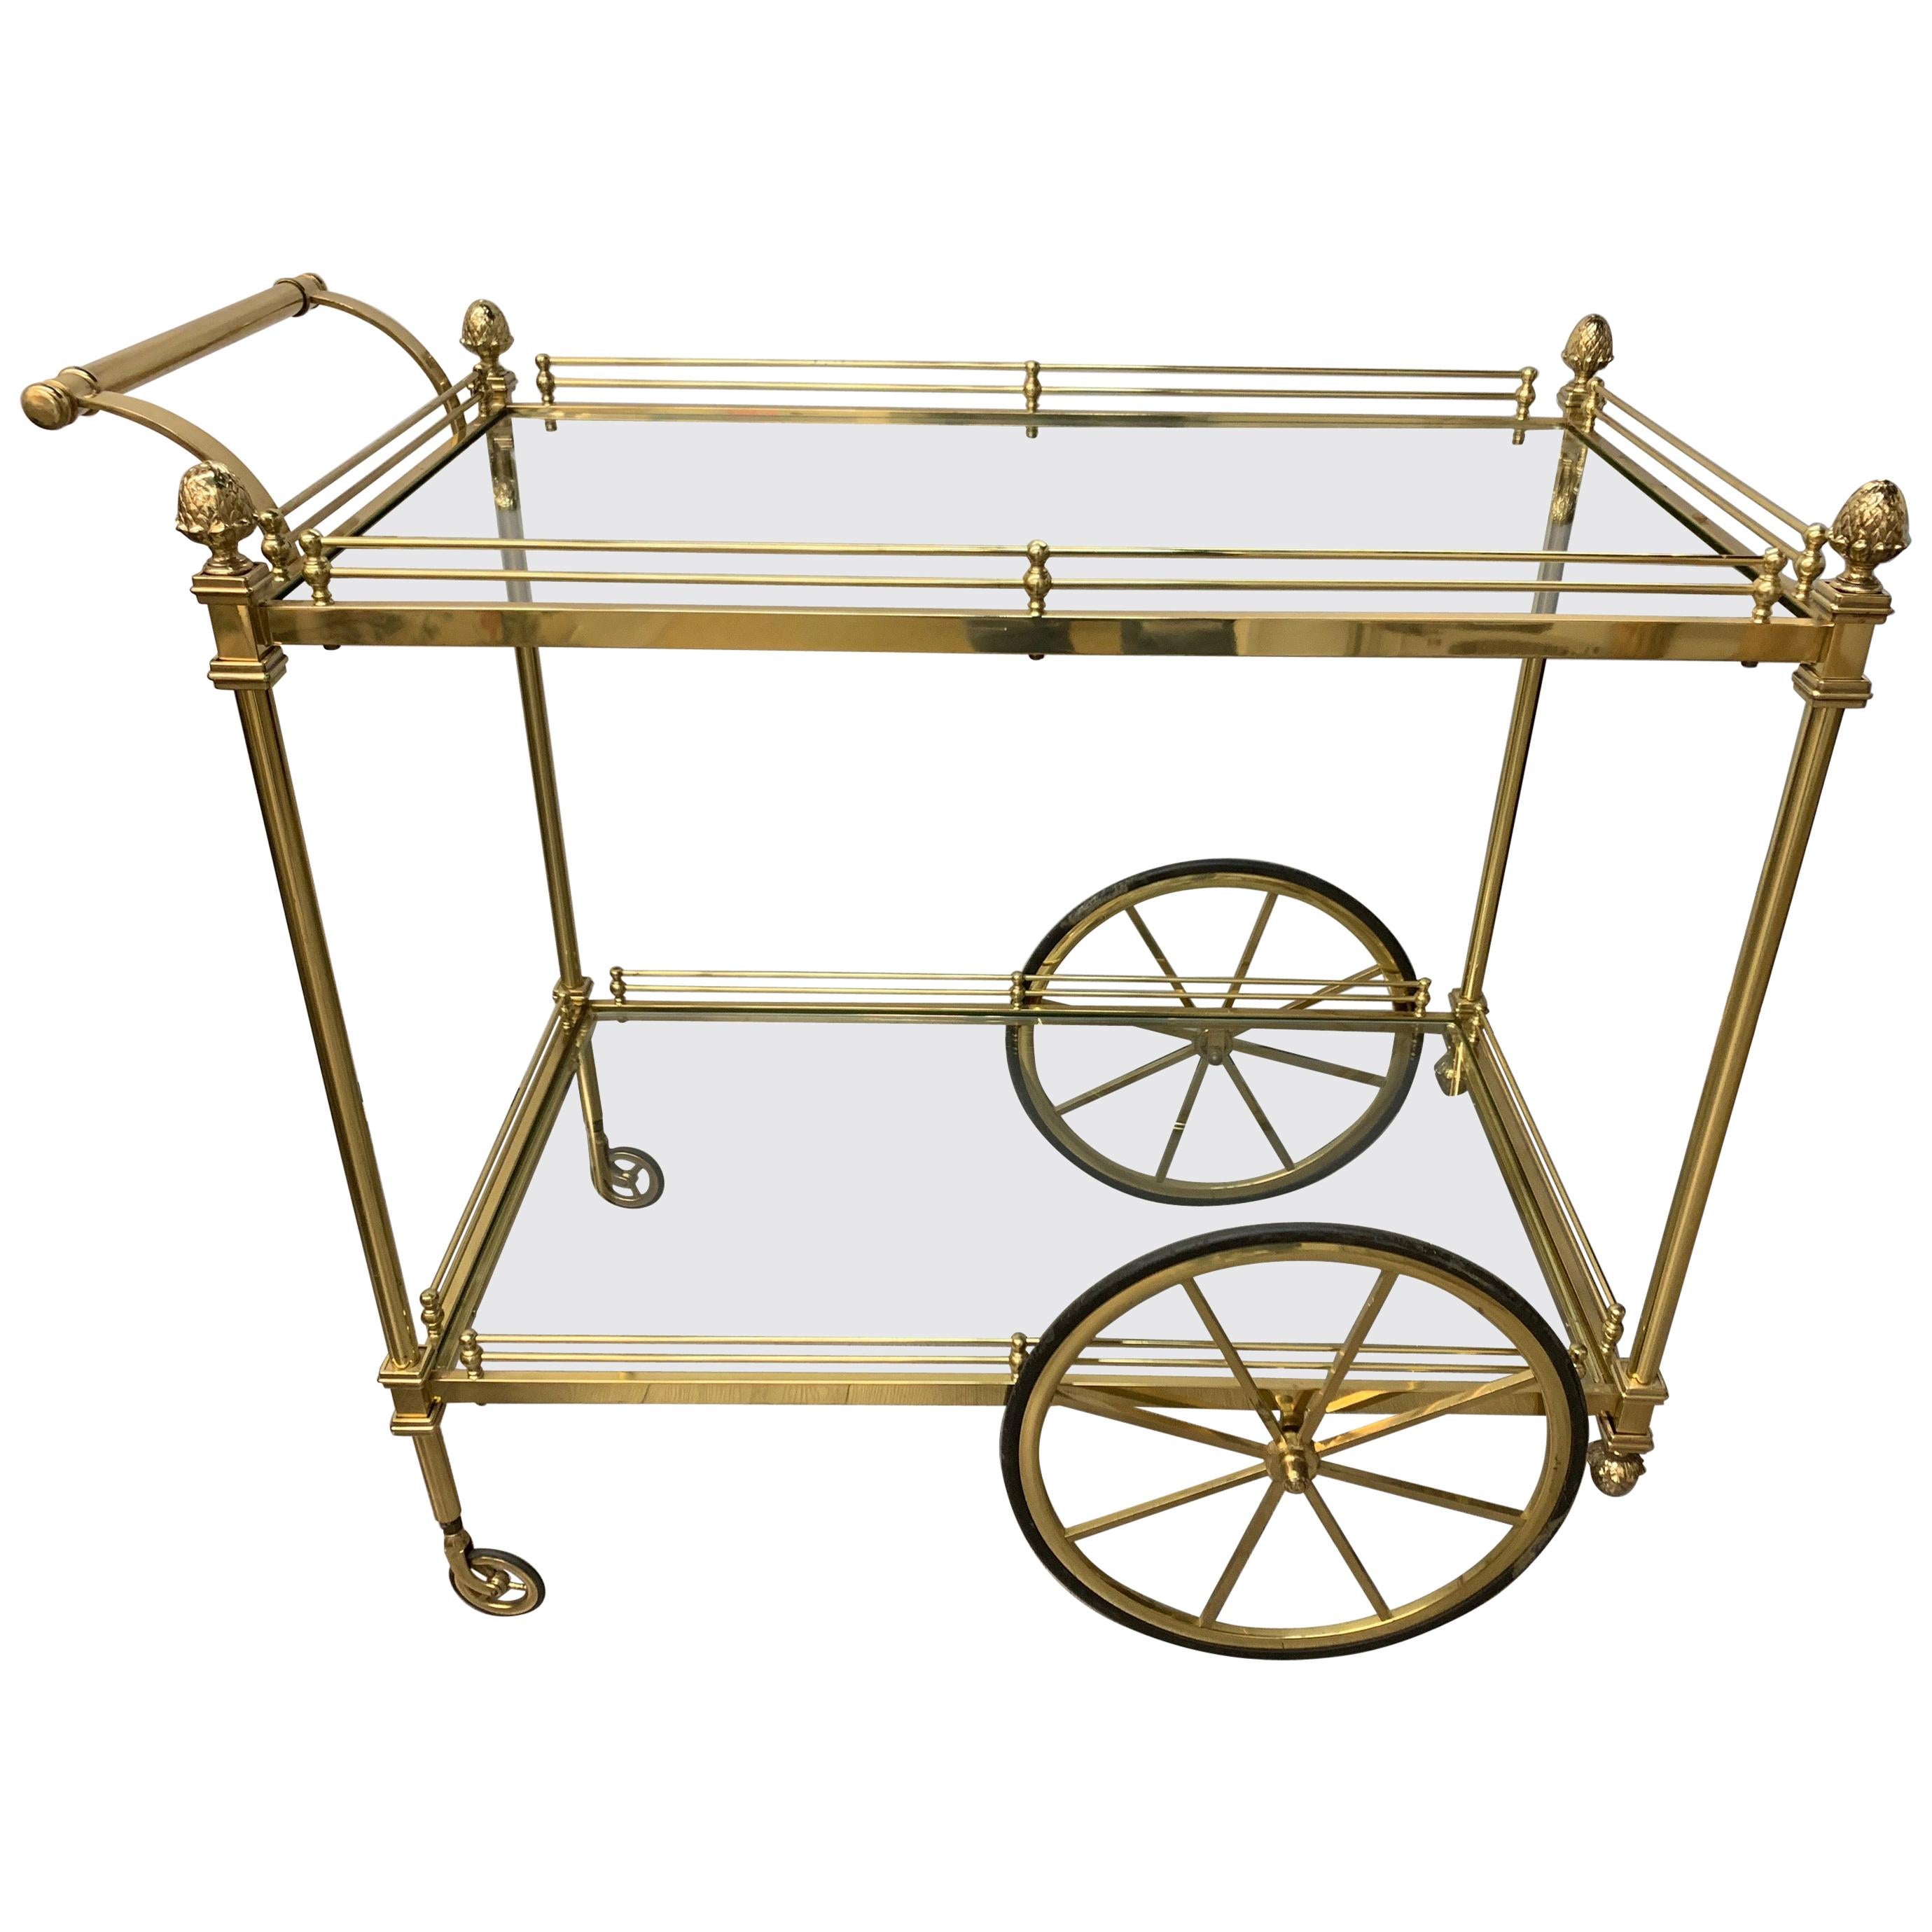 Midcentury Brass Rolling Tea Cart Bar Cart with Glass Shelves